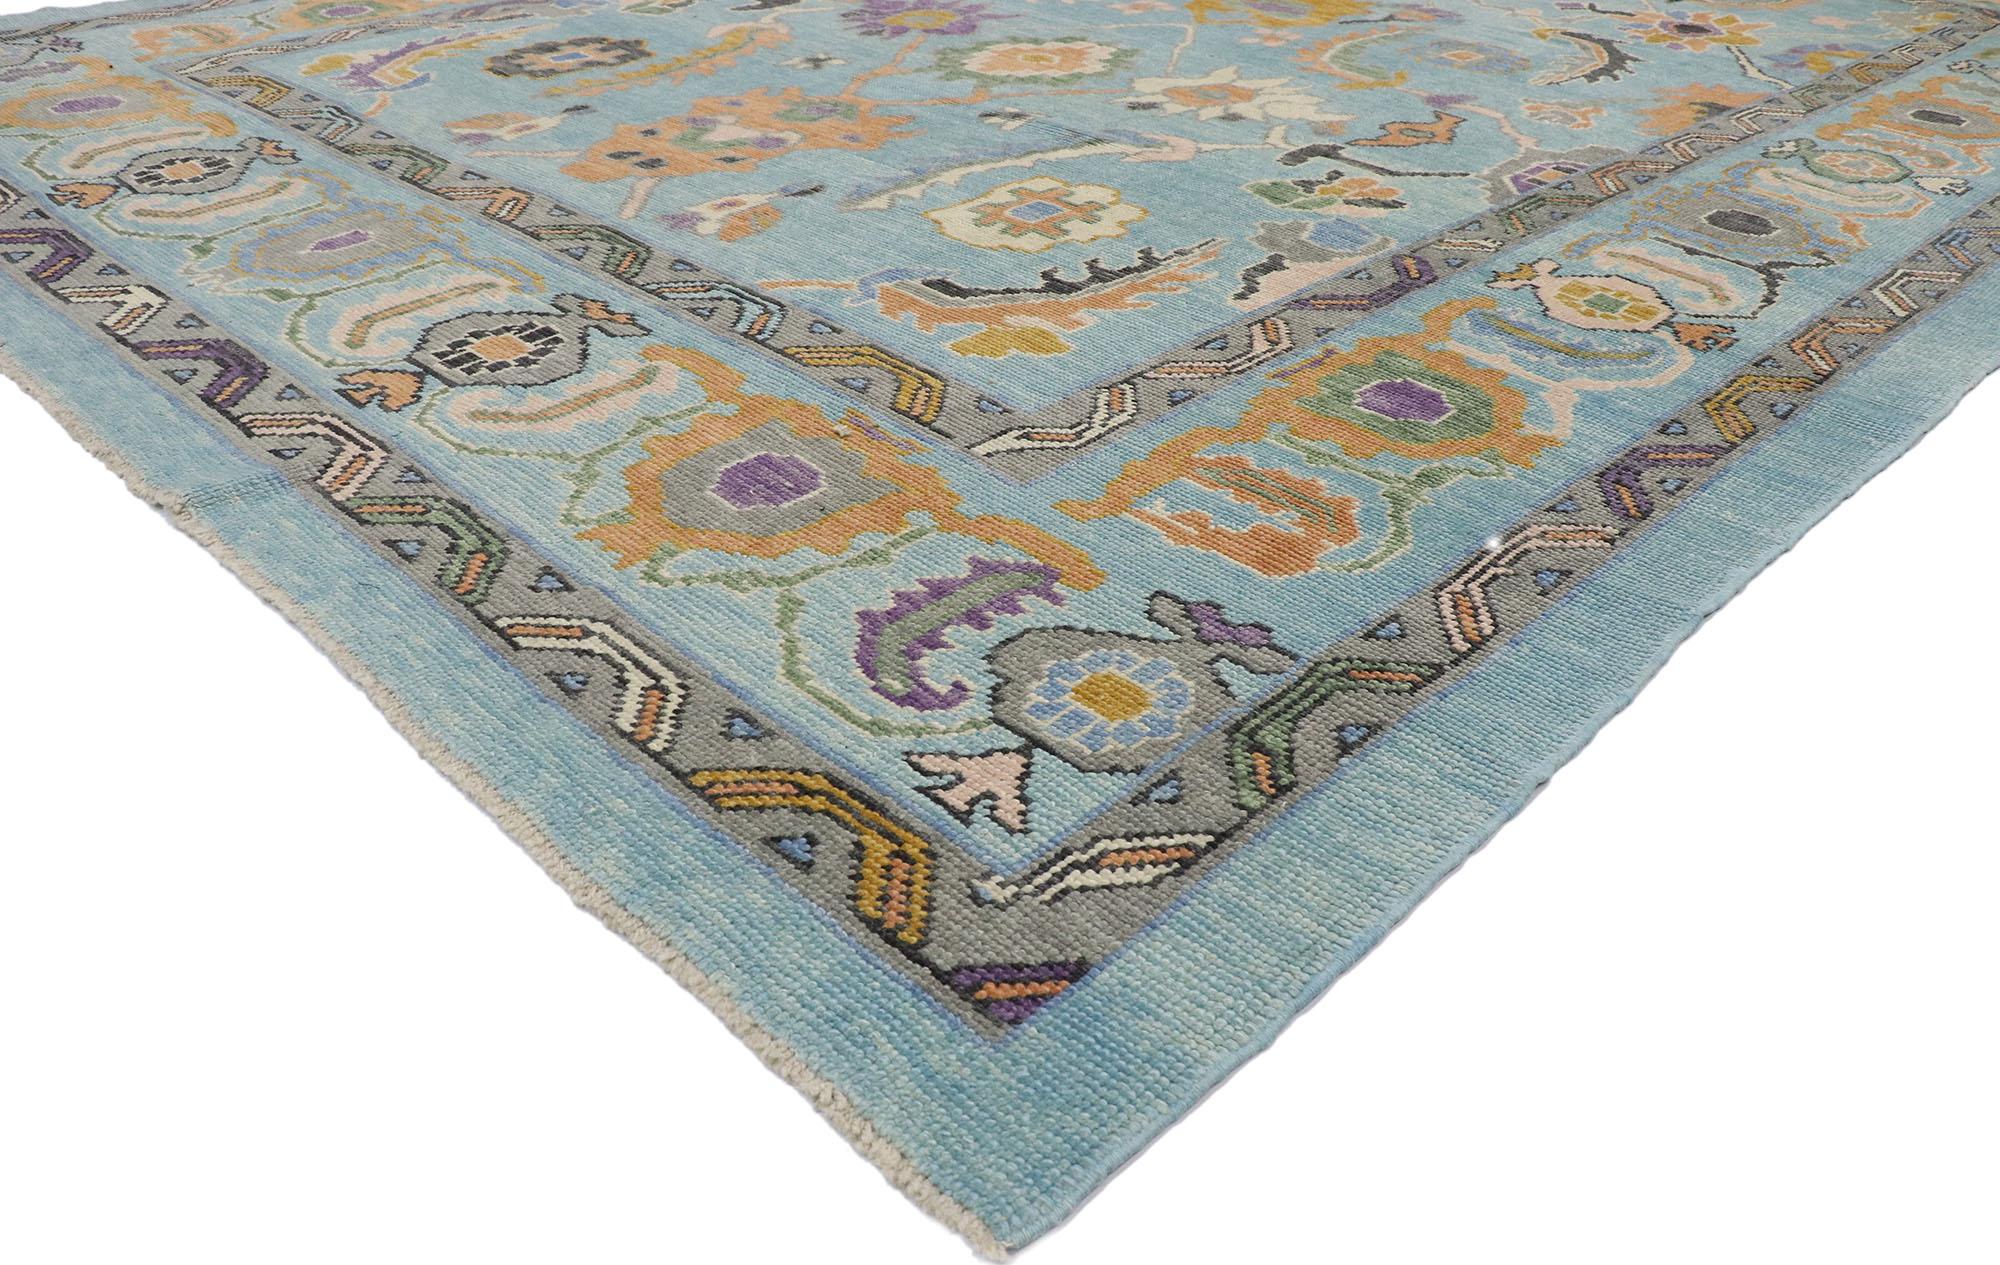 53459 Nouveau tapis turc Oushak contemporain et coloré au style éclectique parisien. Mélangeant des éléments du monde moderne avec une palette de couleurs vibrantes, ce tapis contemporain turc Oushak en laine nouée à la main est prêt à